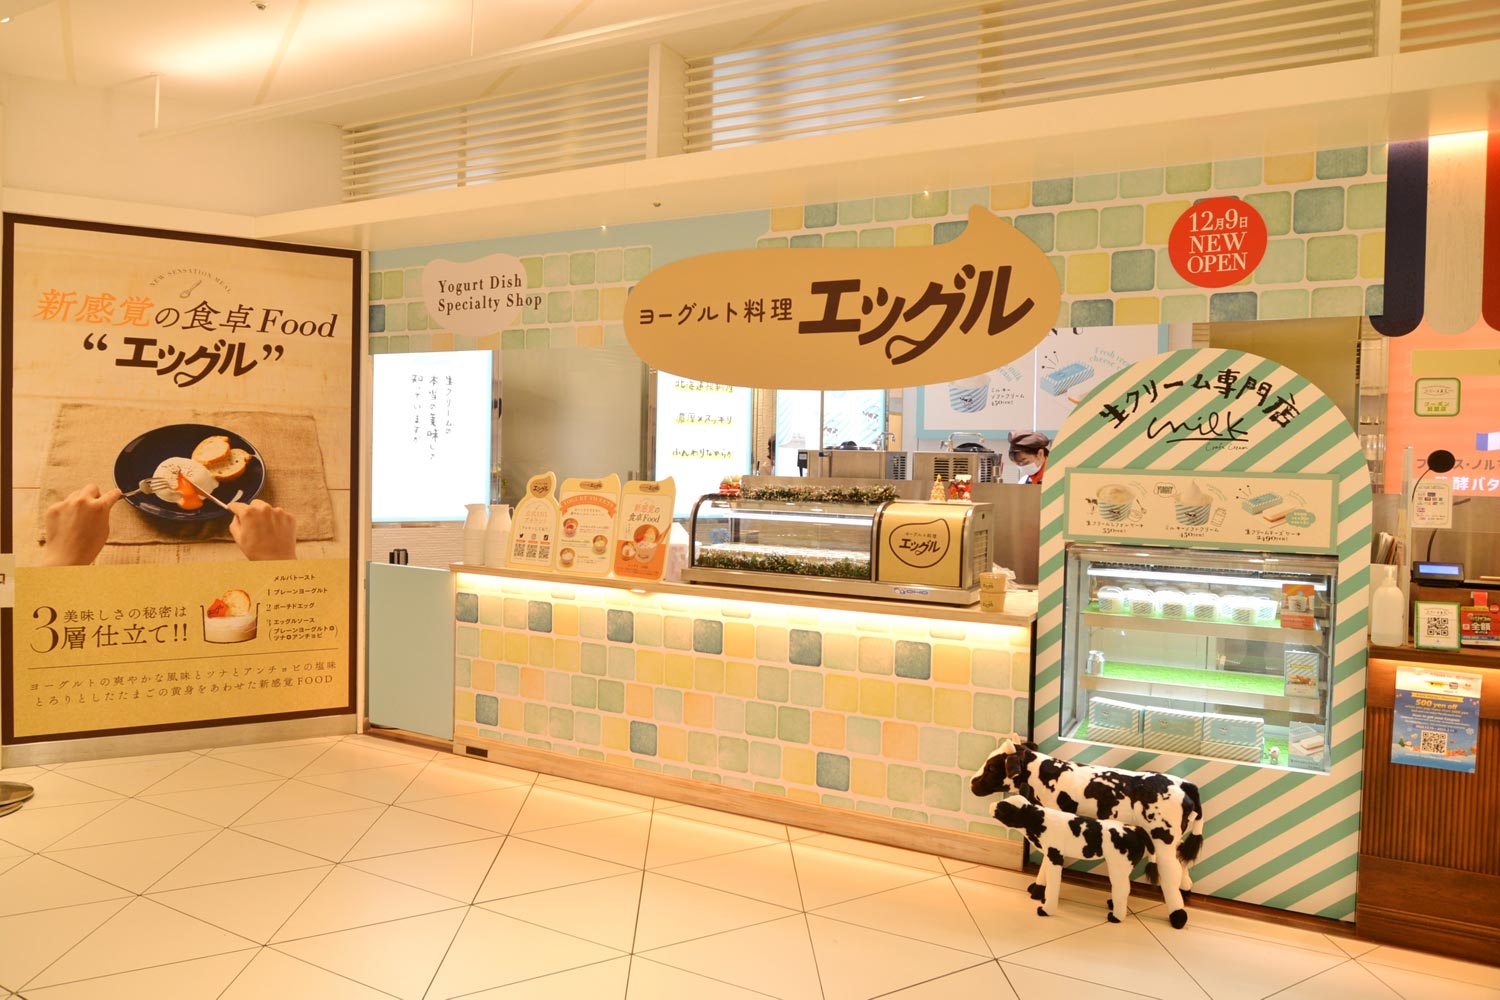 ヨーグルト料理「エッグル」は「東京ソラマチ」2Fに昨年11月に期間限定オープン。好評につき2023年2月28日まで延長